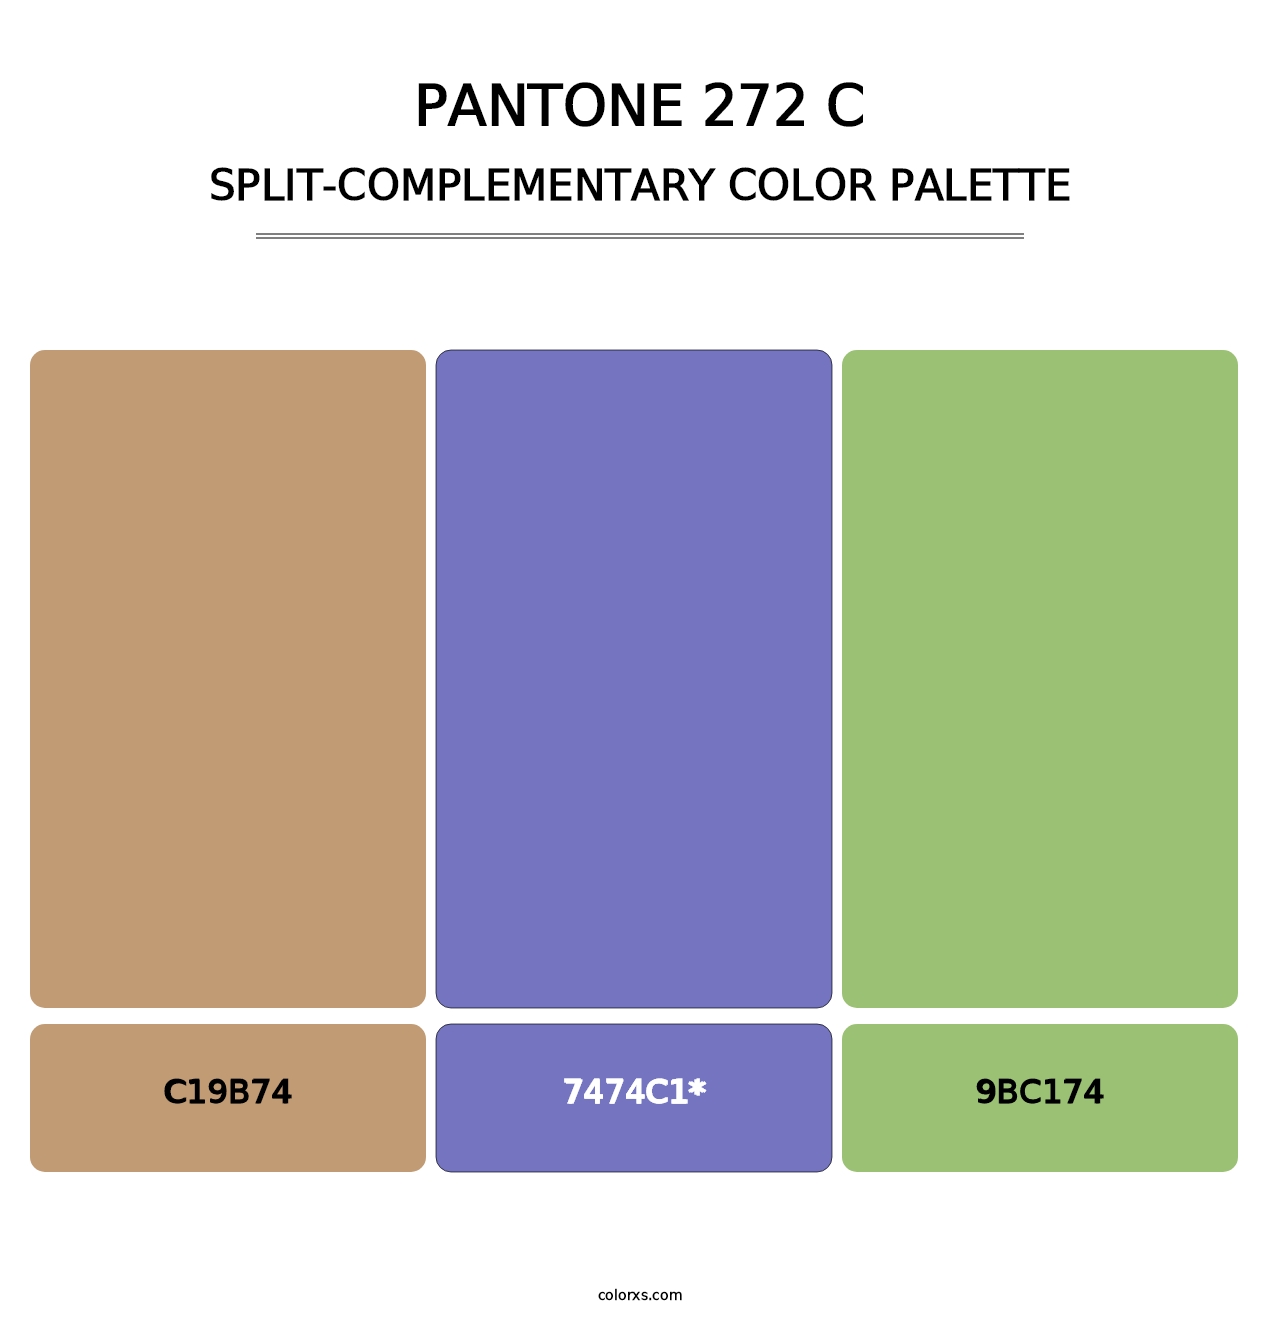 PANTONE 272 C - Split-Complementary Color Palette